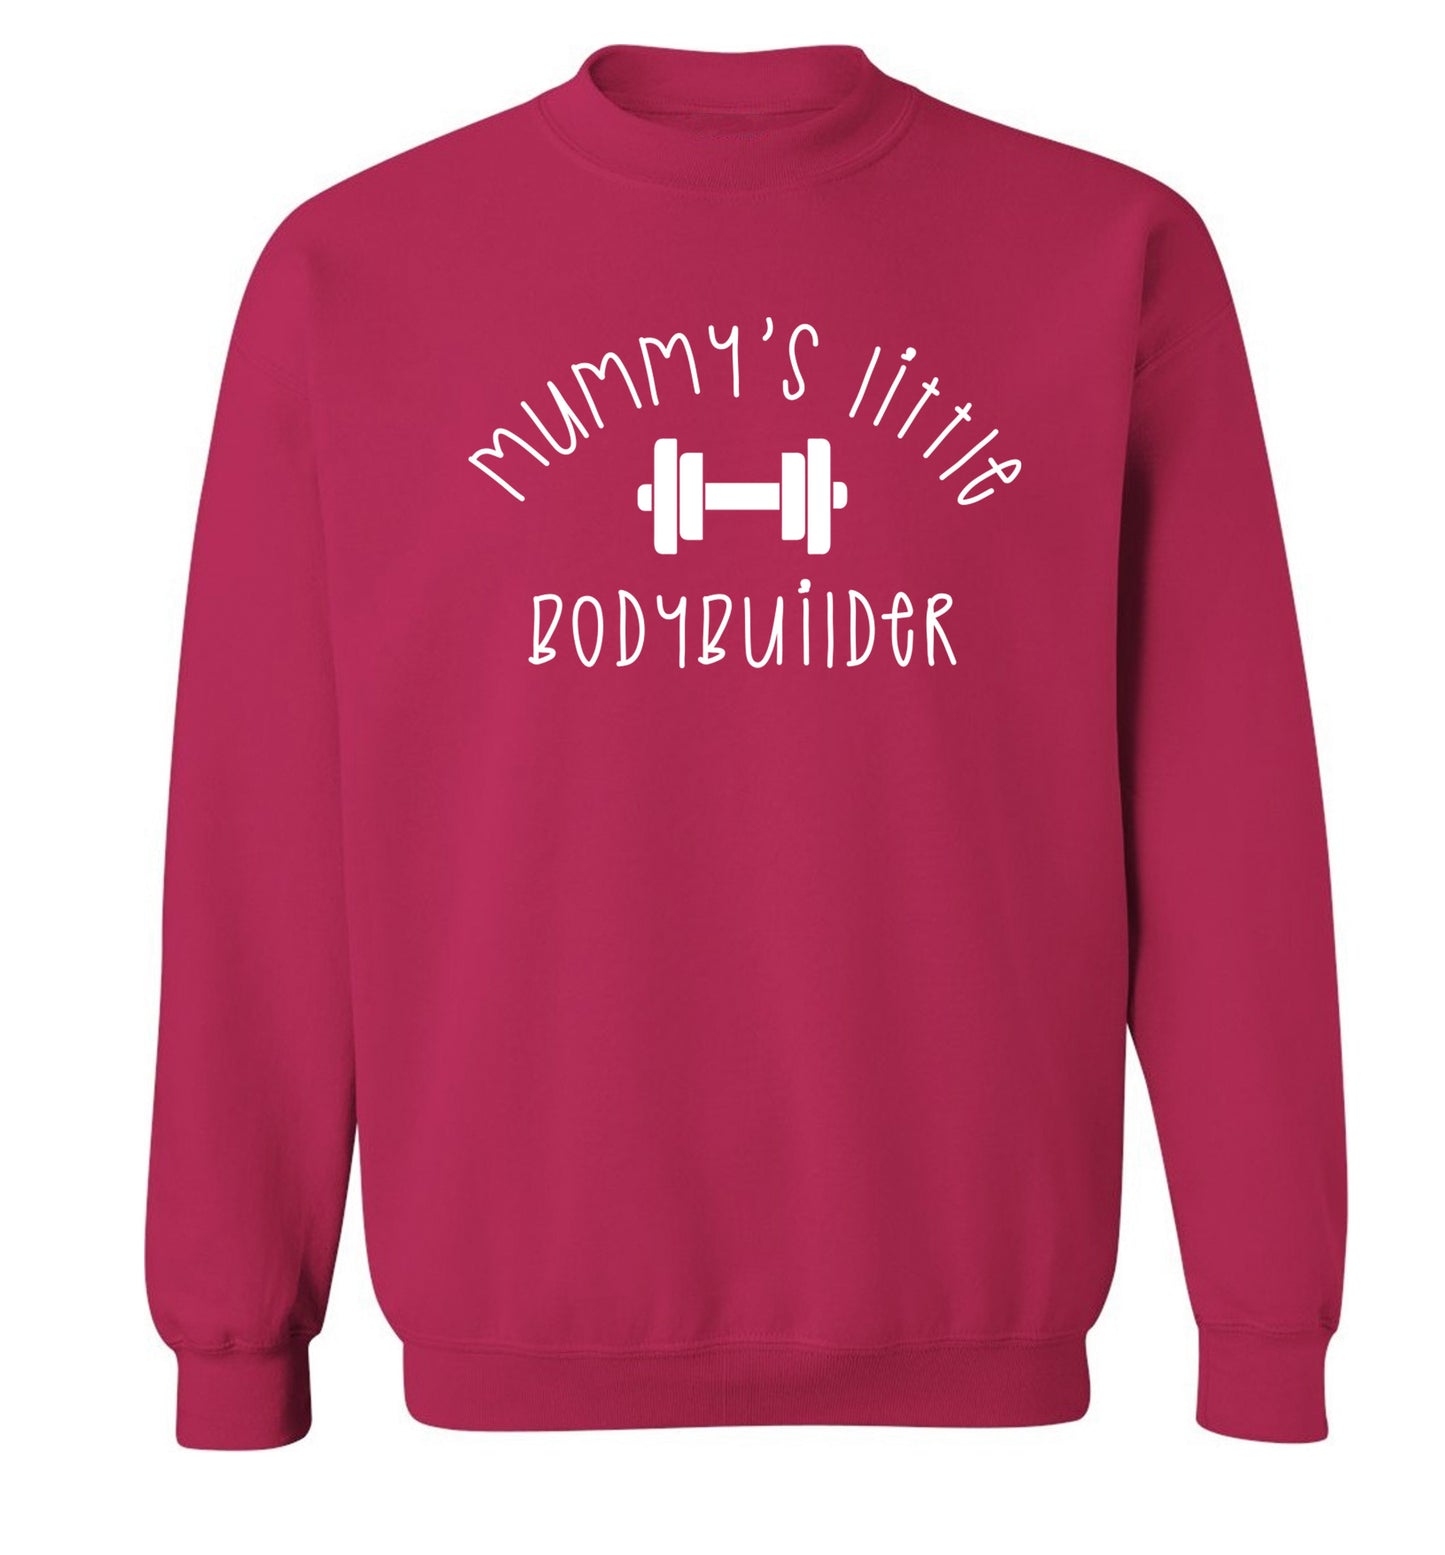 Mummy's little bodybuilder Adult's unisex pink Sweater 2XL